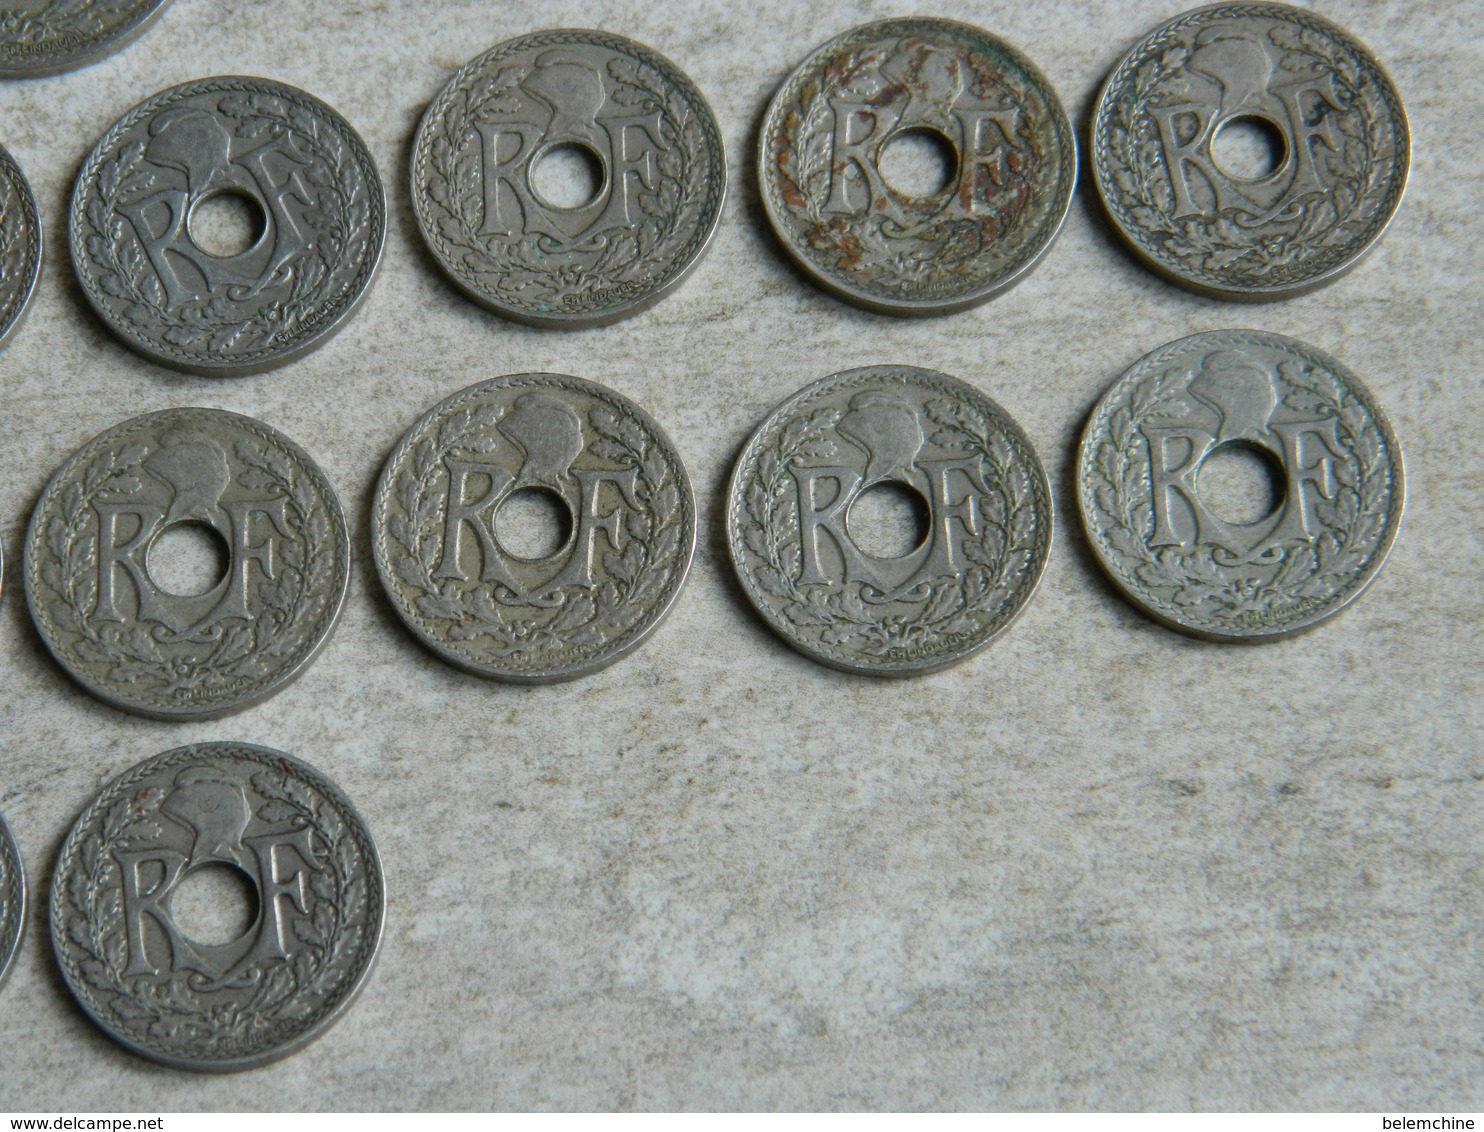 LOT DE PIECES LINDAUER 1918 à 1939  25 centimes et 10 centimes (39 unités)